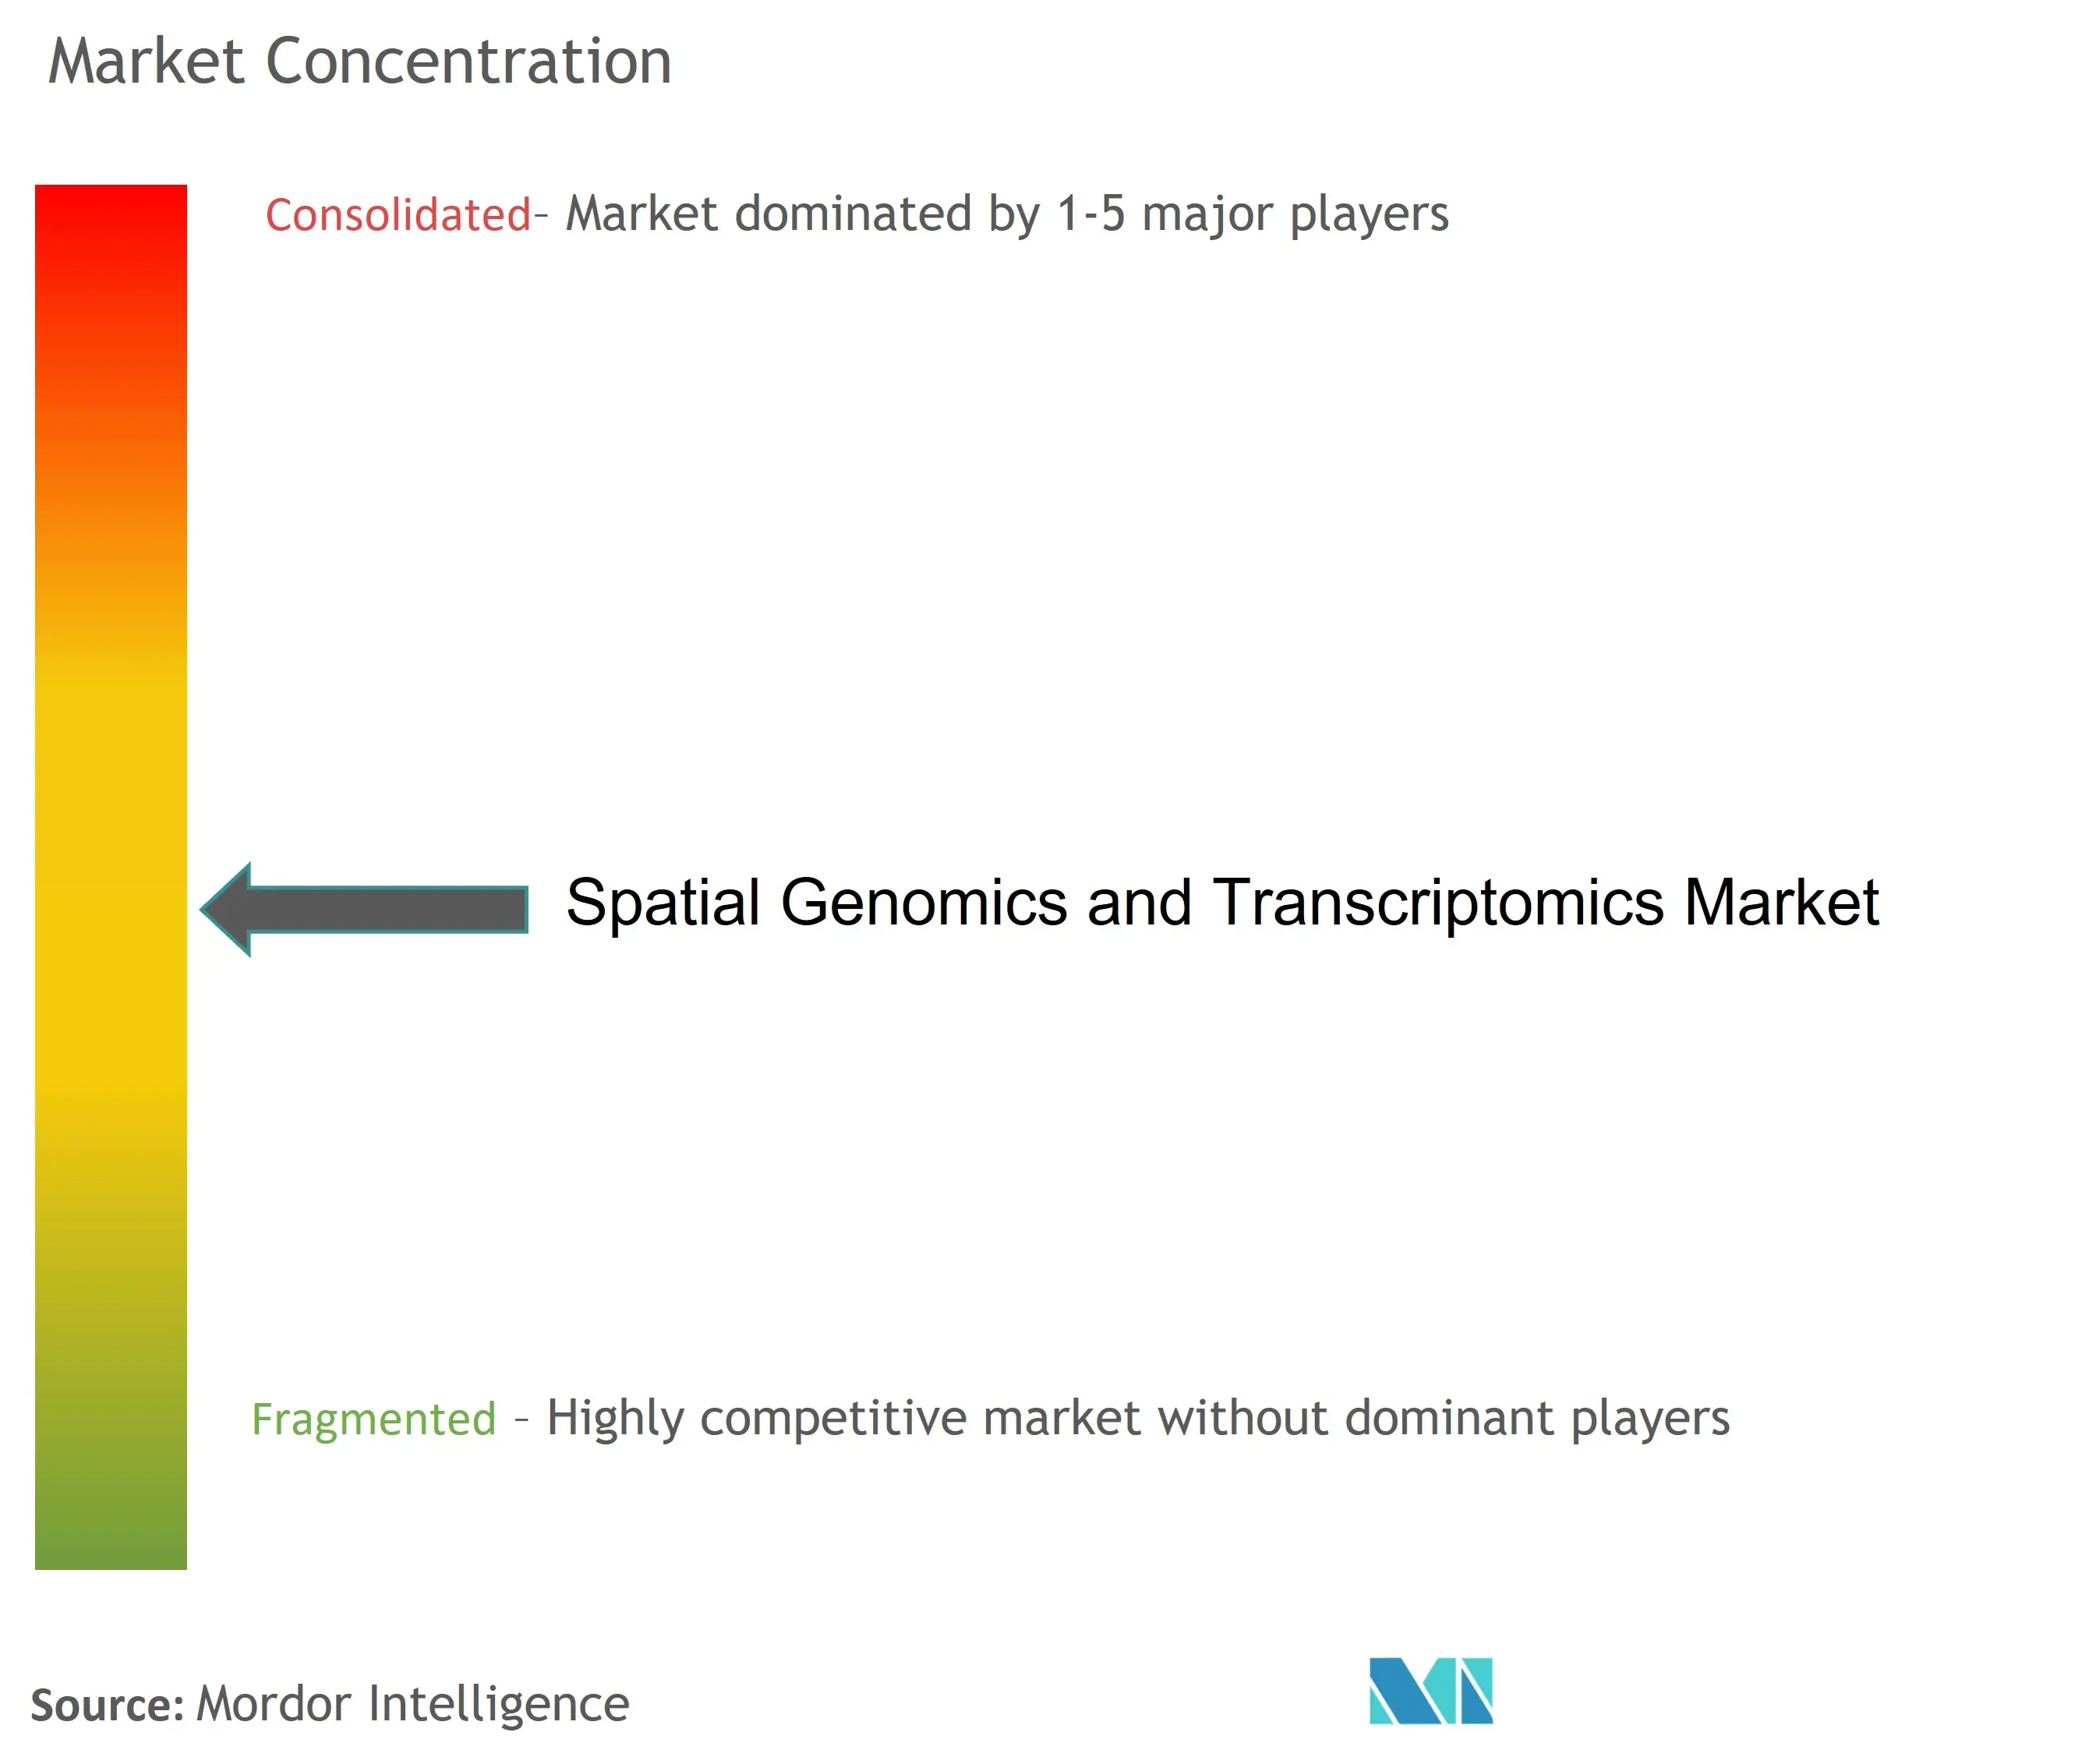 Spatial Genomics and Transcriptomics Market Concentration